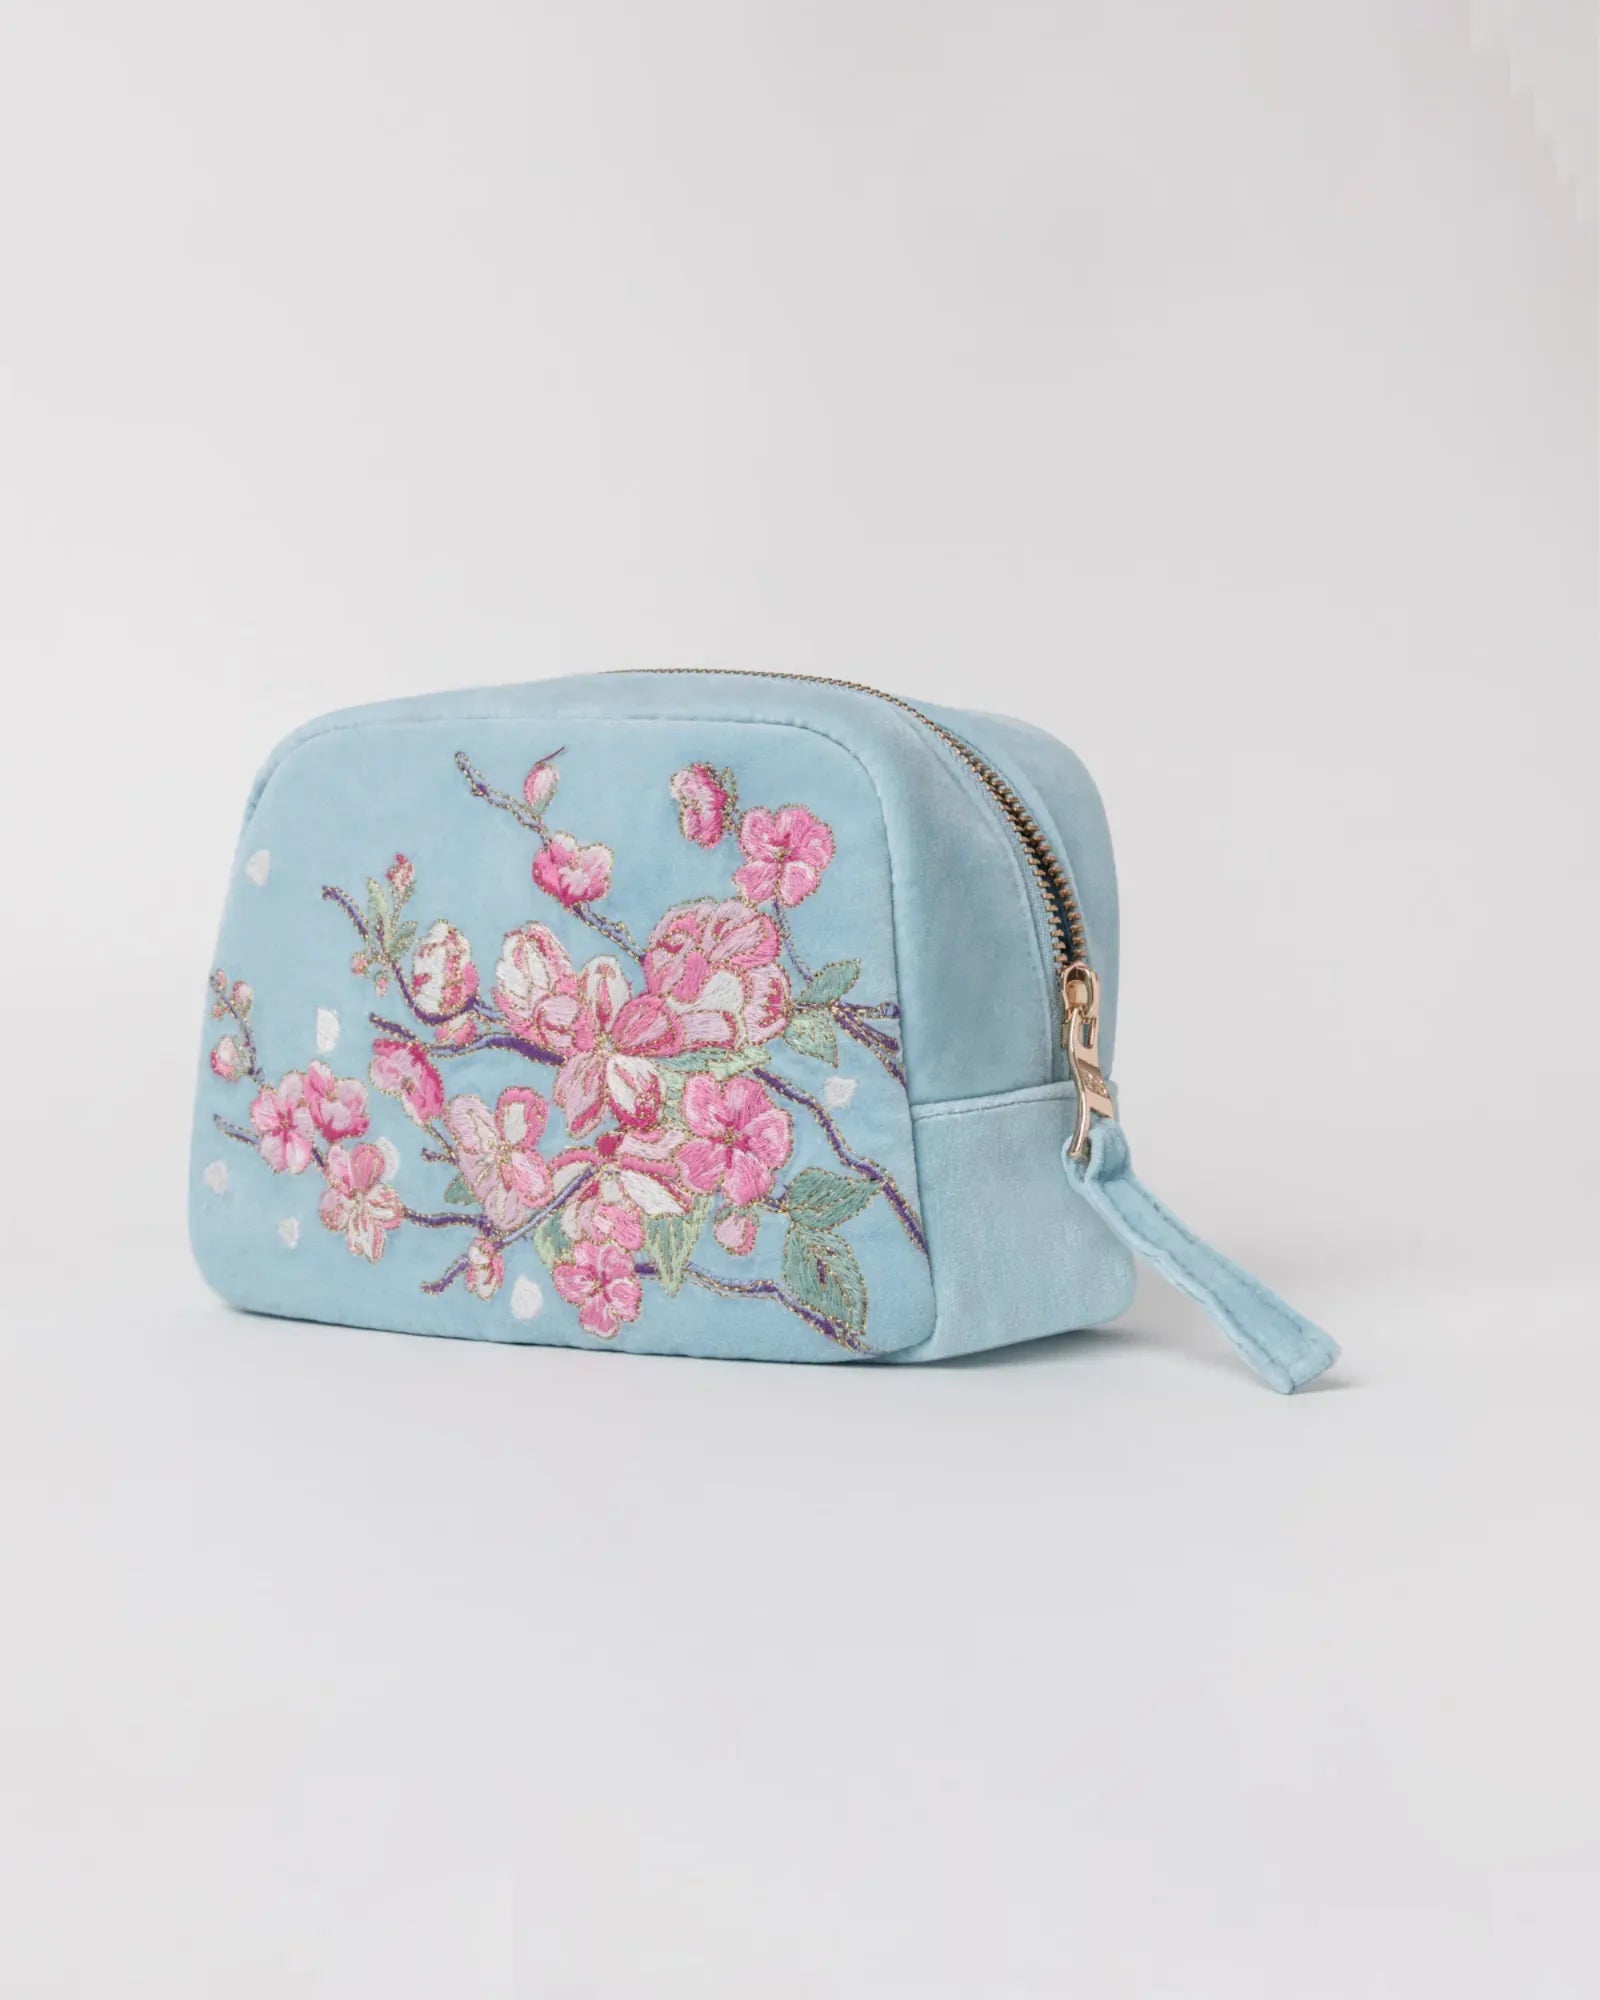 Cherry Blossom Cosmetics Bag - Sky Blue